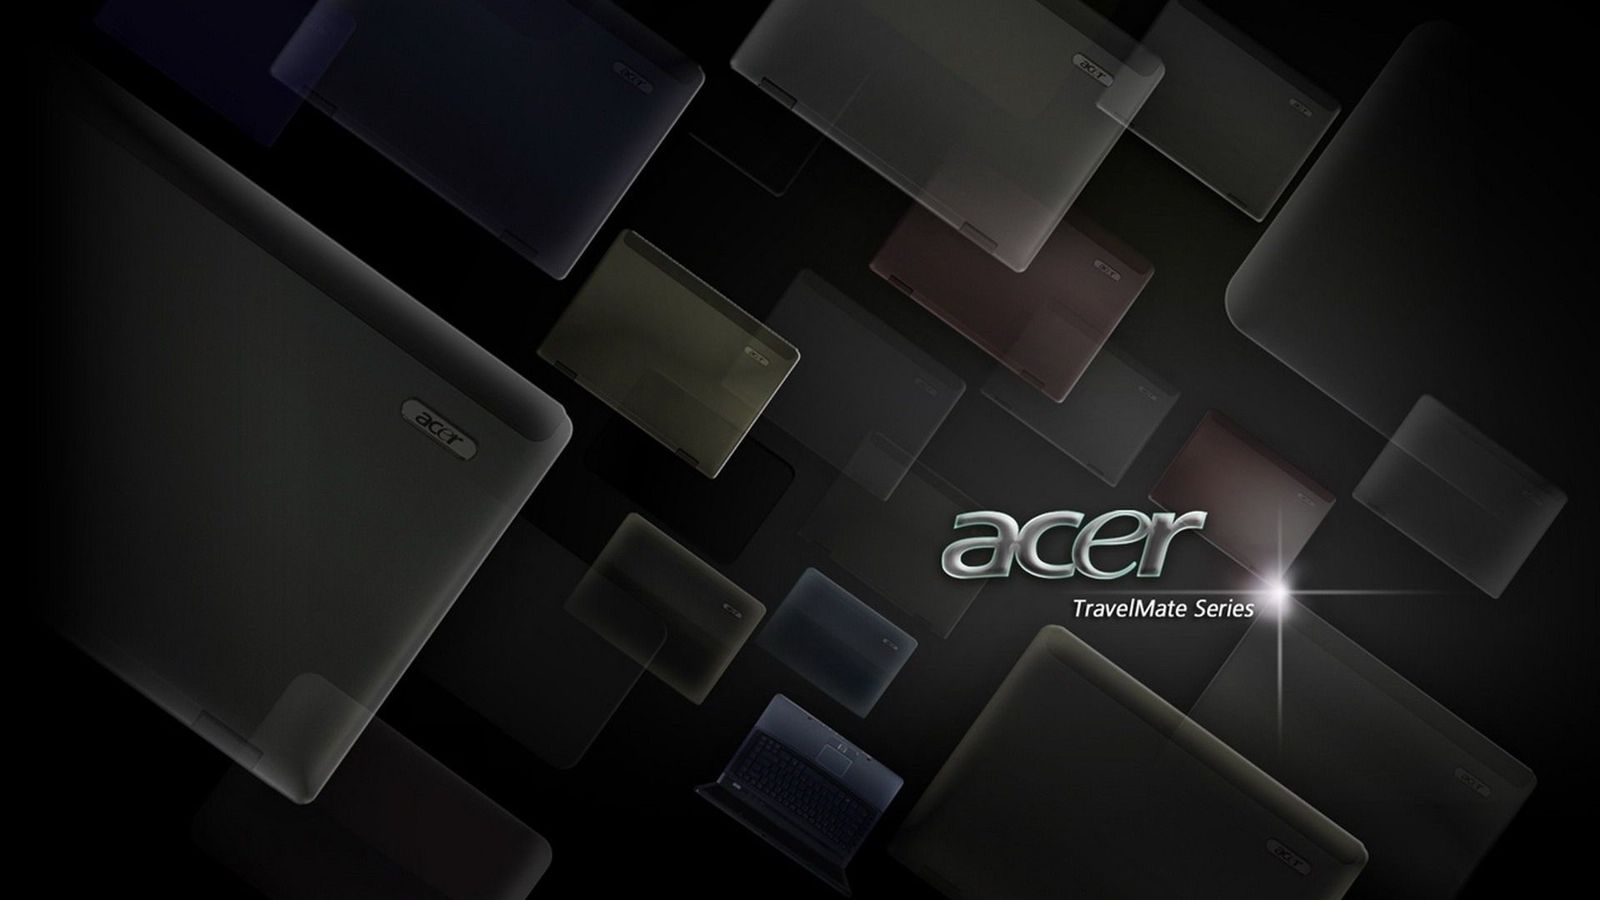 Acer Wallpaper 1080p HD 1920x1080 - WallpaperSafari